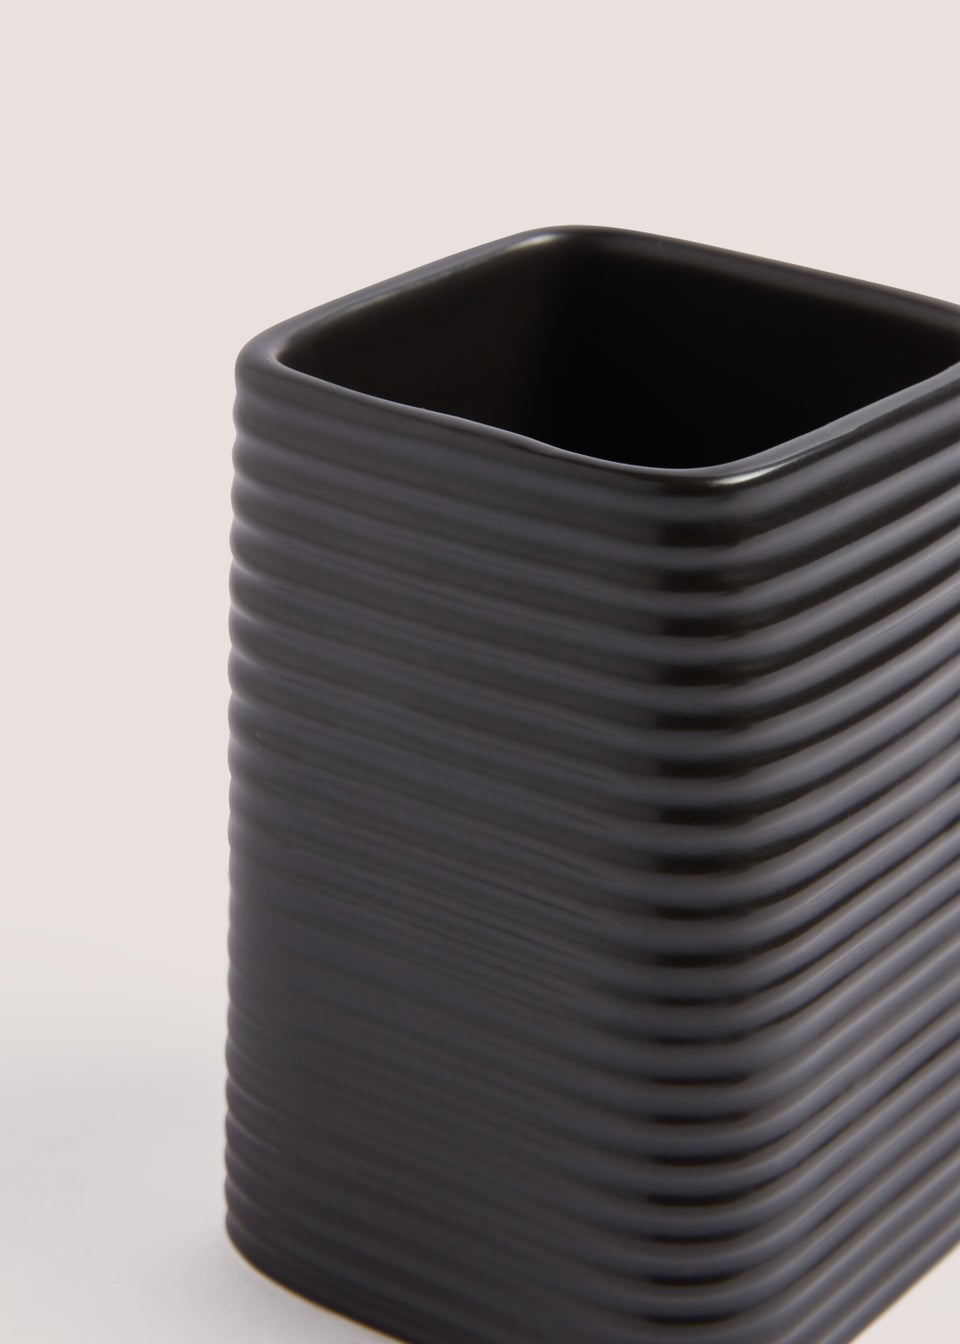 Black Ceramic Bathroom Tumbler (7.5cm x 7.5cm x 11.5cm)